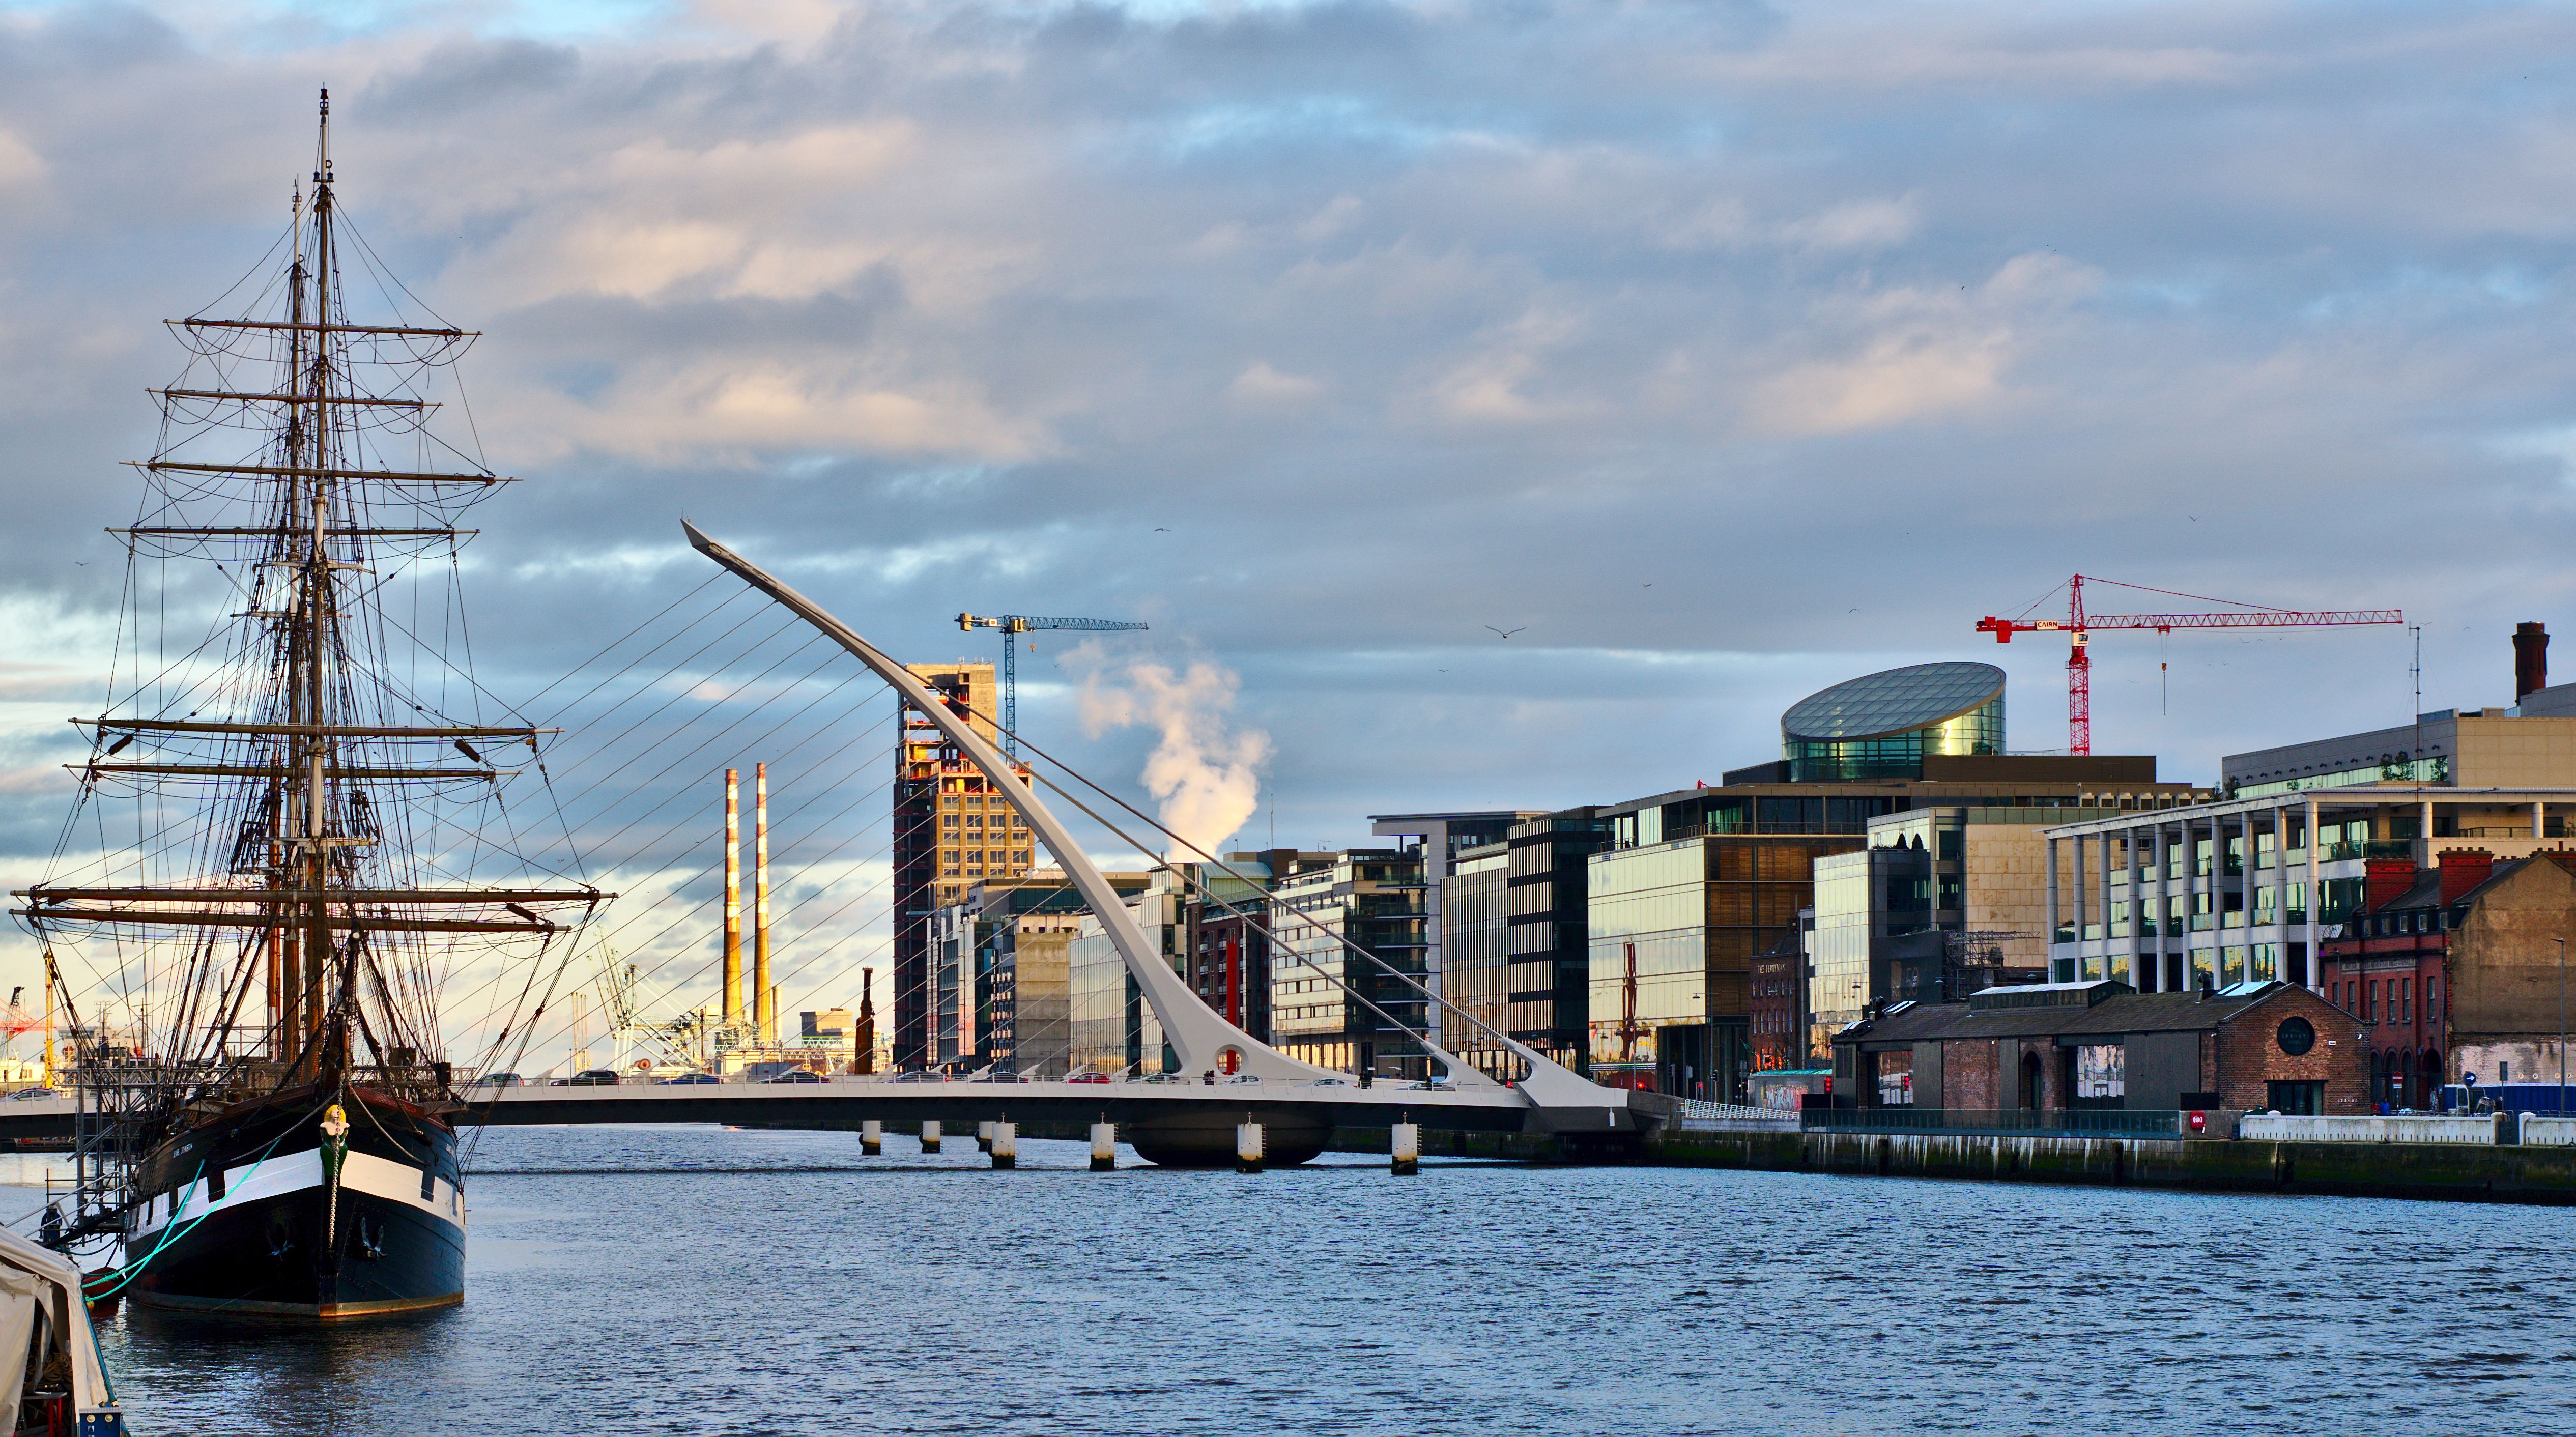 Samuel Beckett bridge over the Liffey river, Dublin